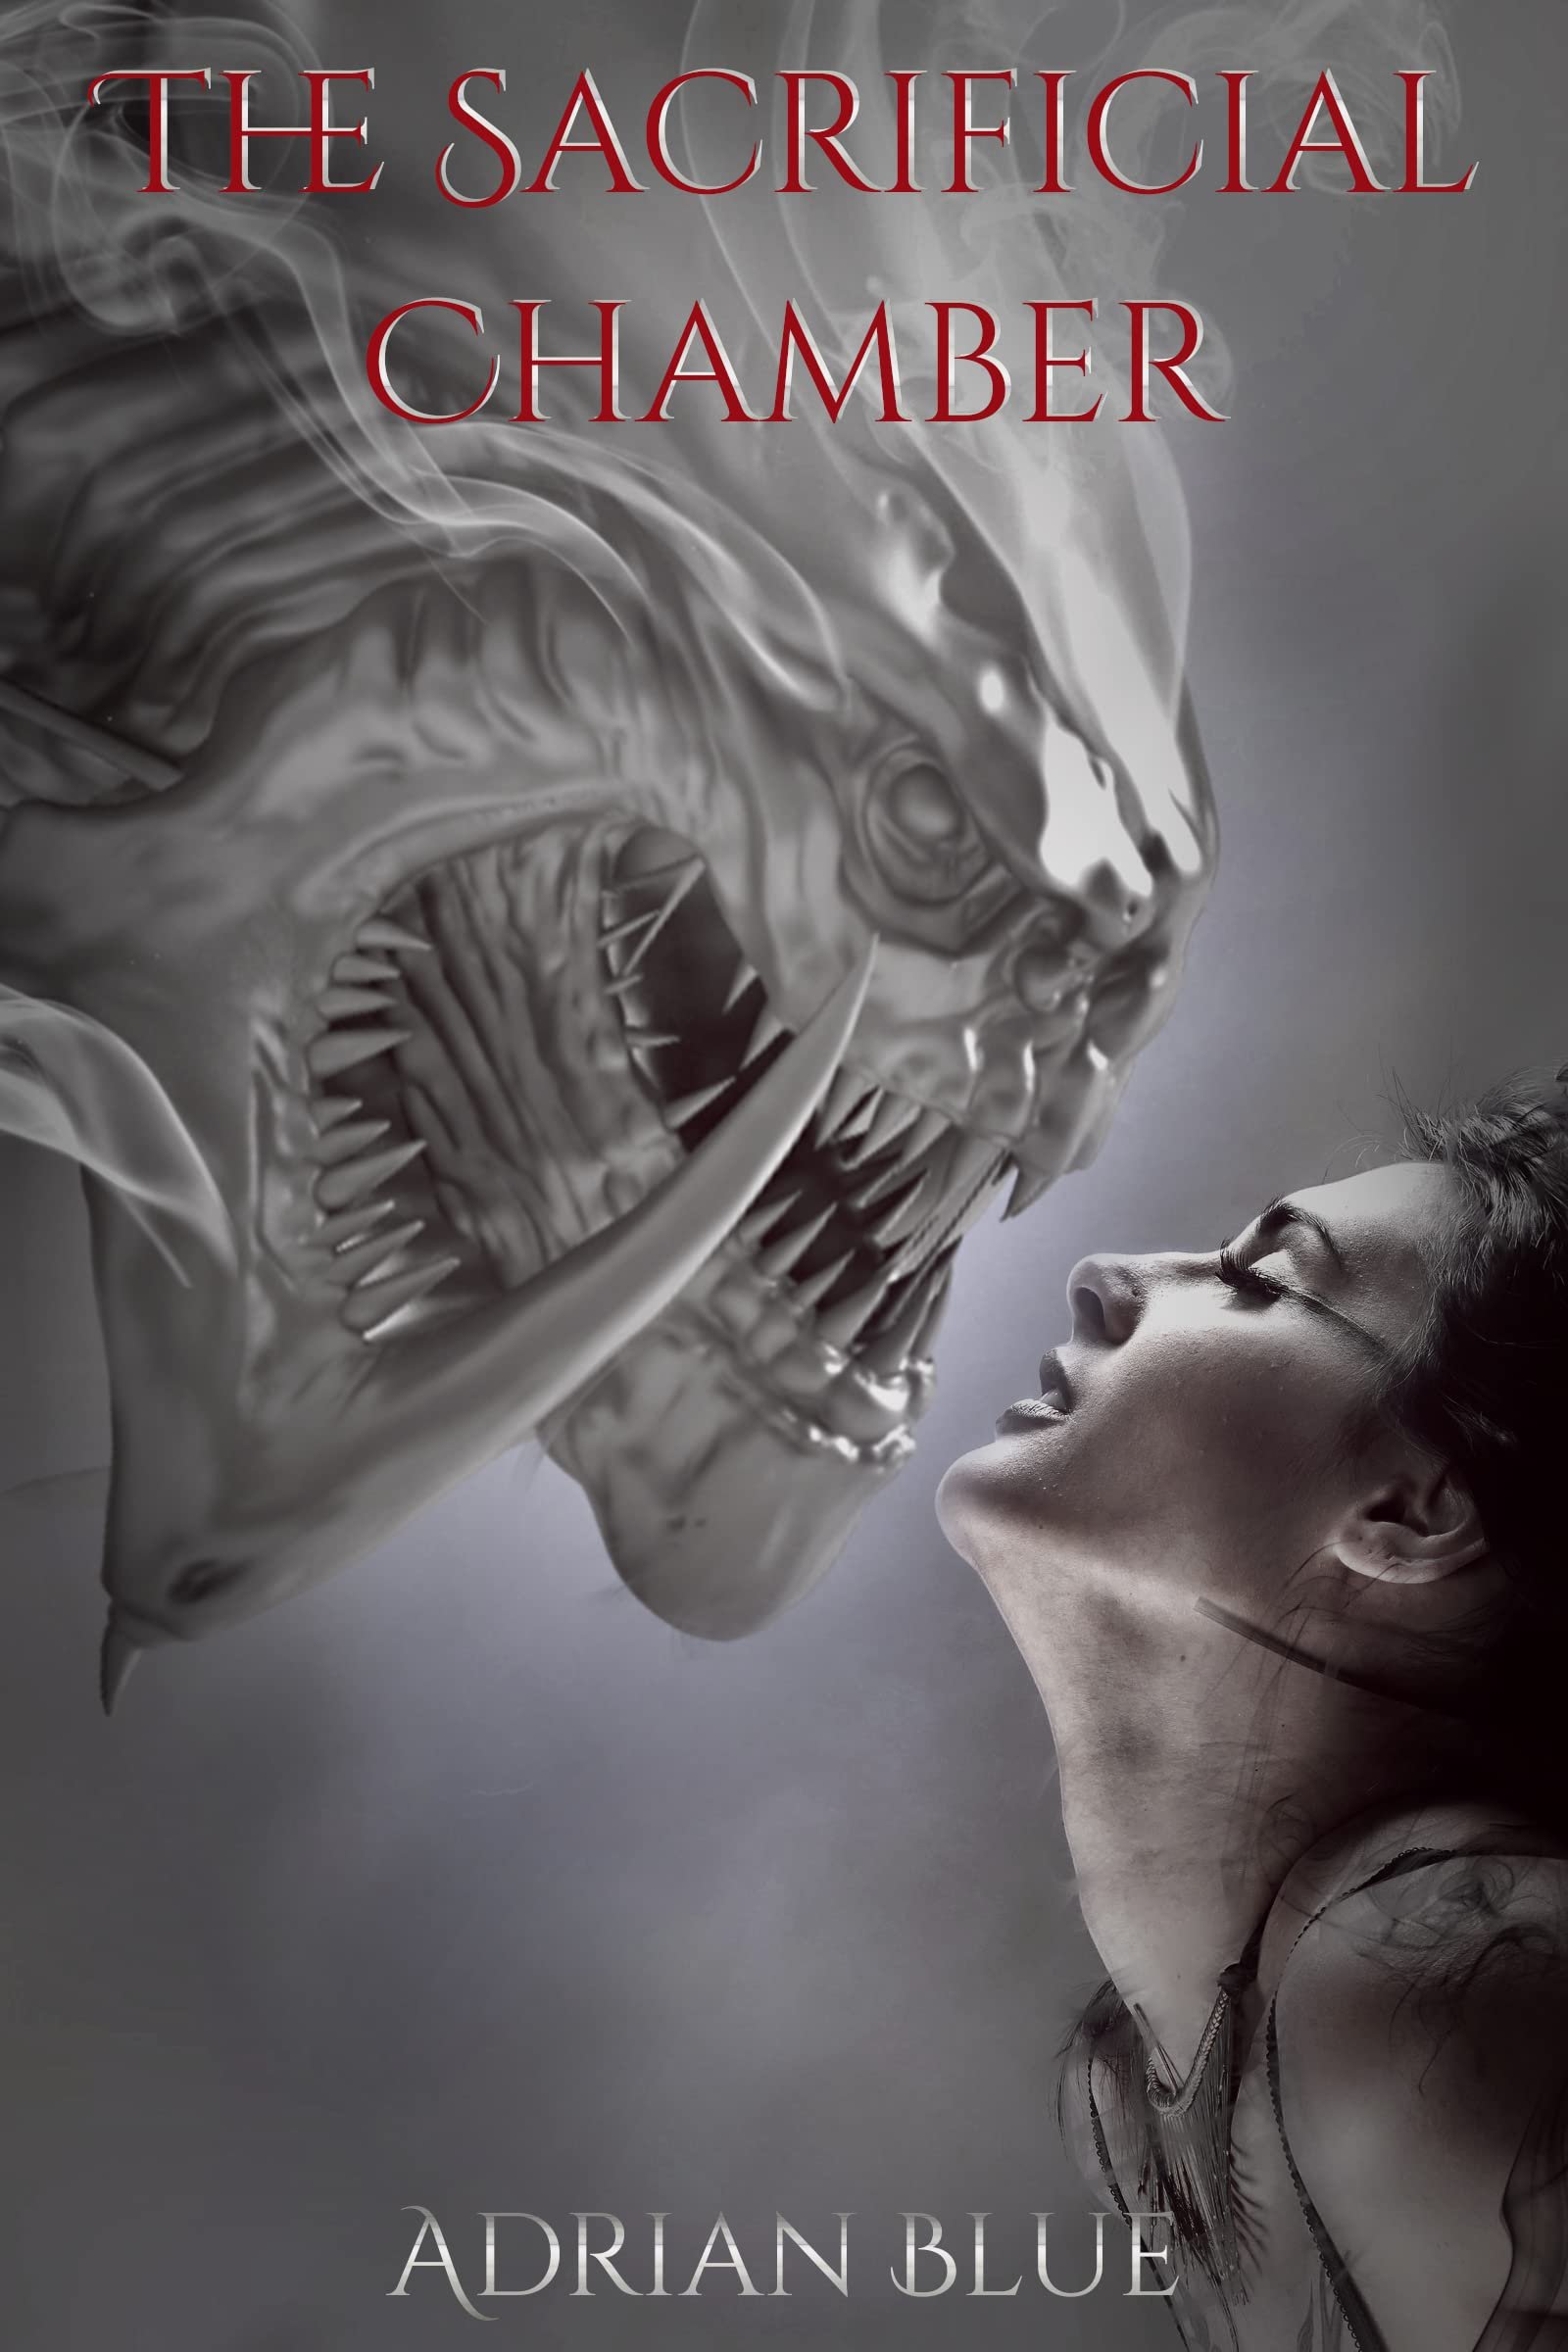 The Sacrificial Chamber: An Alien Romance Short Cover